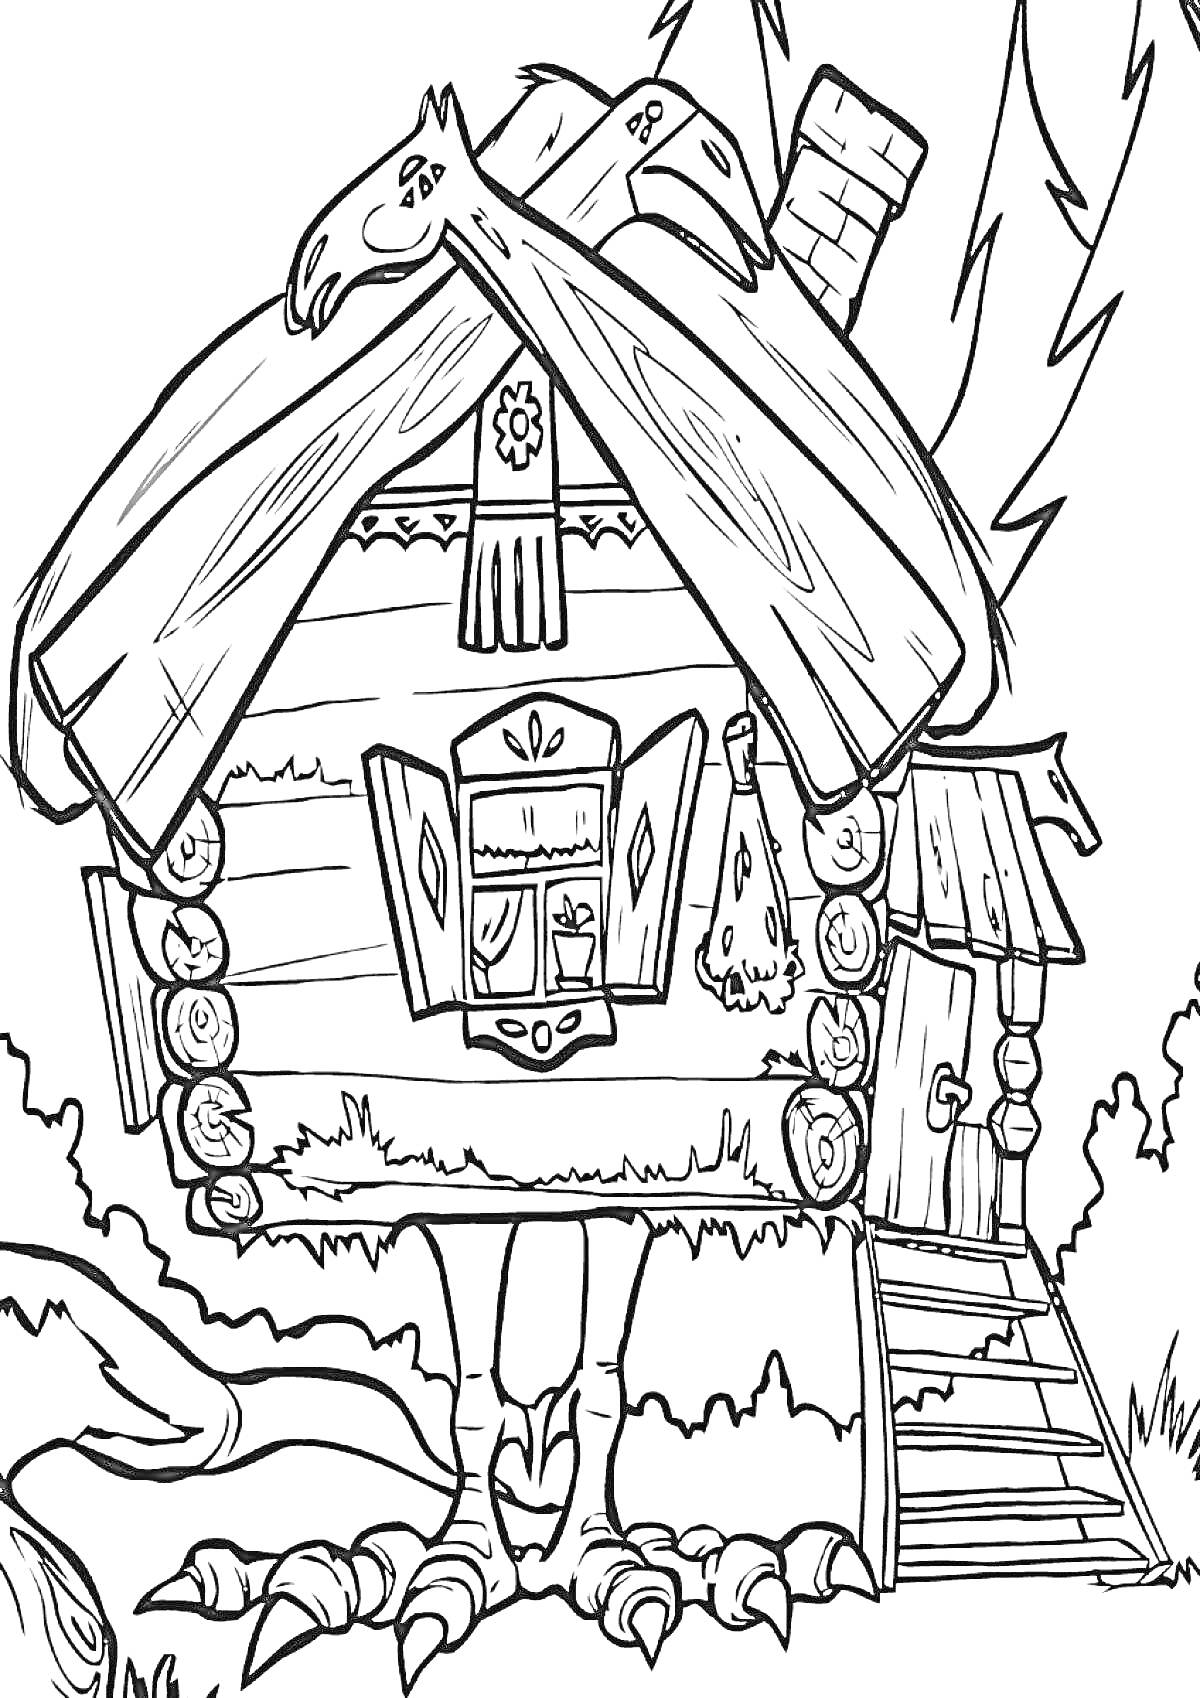 Раскраска Избушка на курьих ножках с орлиной головой на крыше, сруба из бревен, лестницей и окном с занавесками